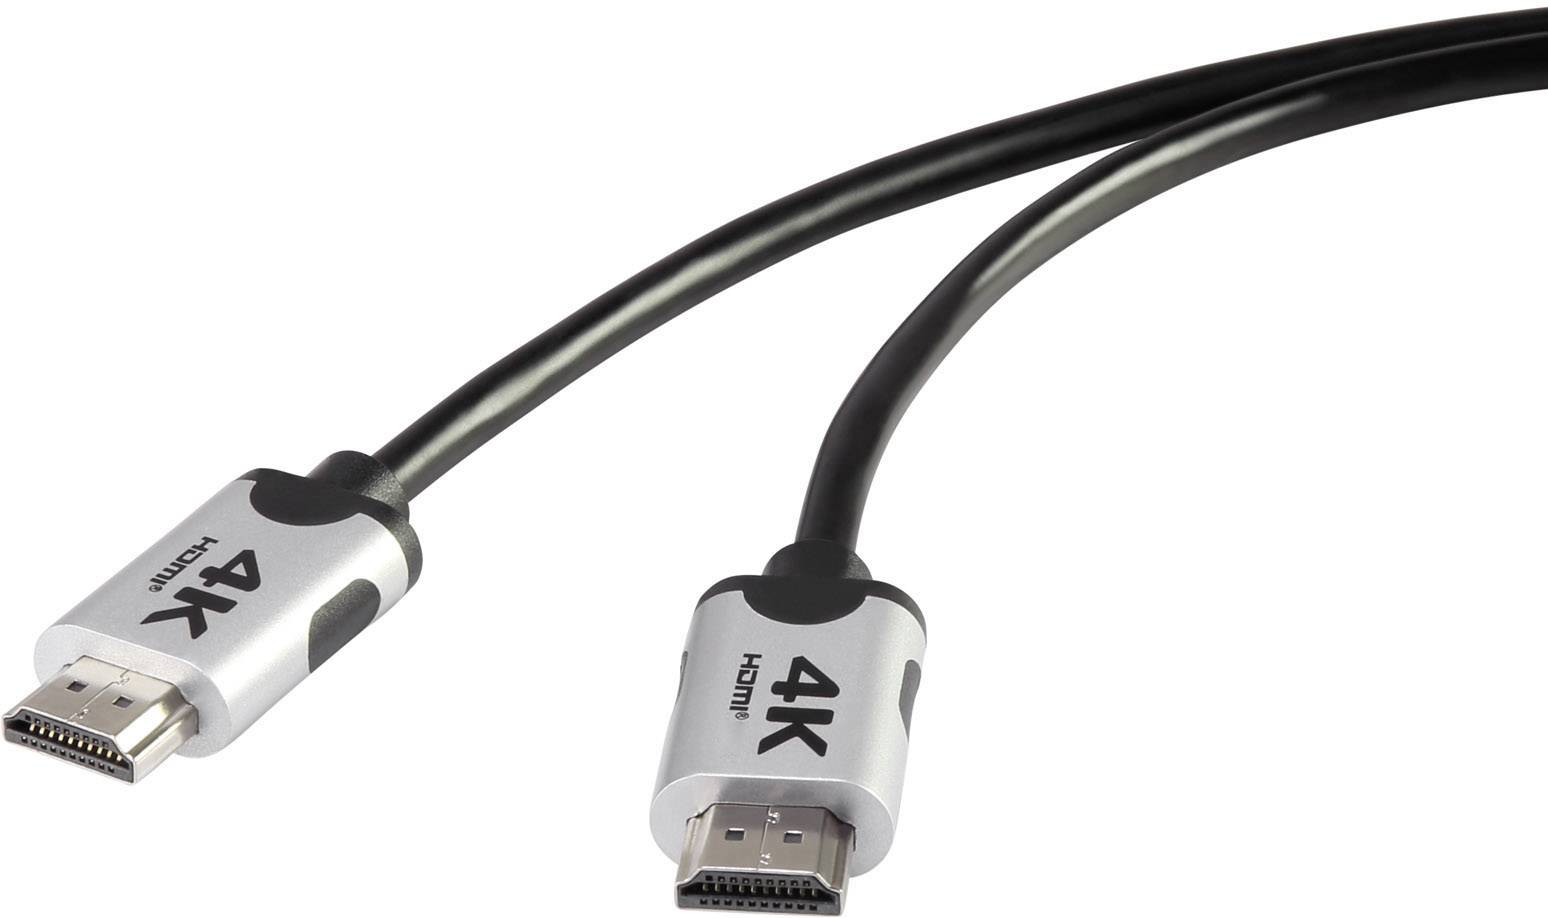 CONRAD Premium HDMI 4k/Ultra-HD Anschlusskabel [1x HDMI-Stecker - 1x HDMI-Stecker] 2m Schwarz